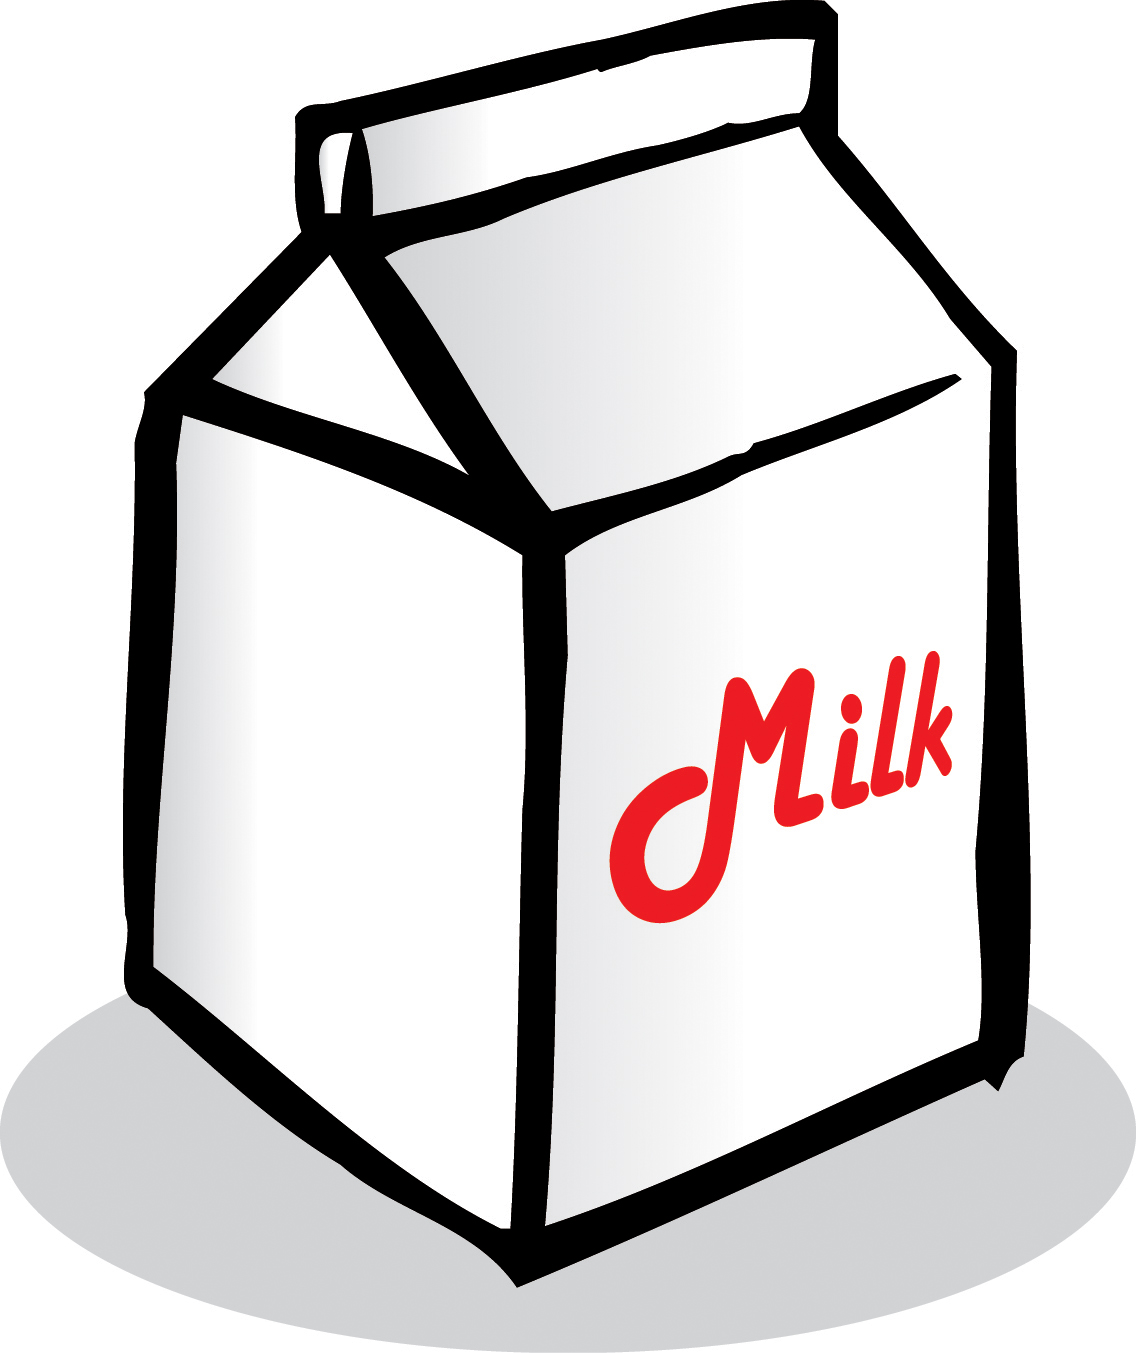 Milk Carton Clipart Black And White.